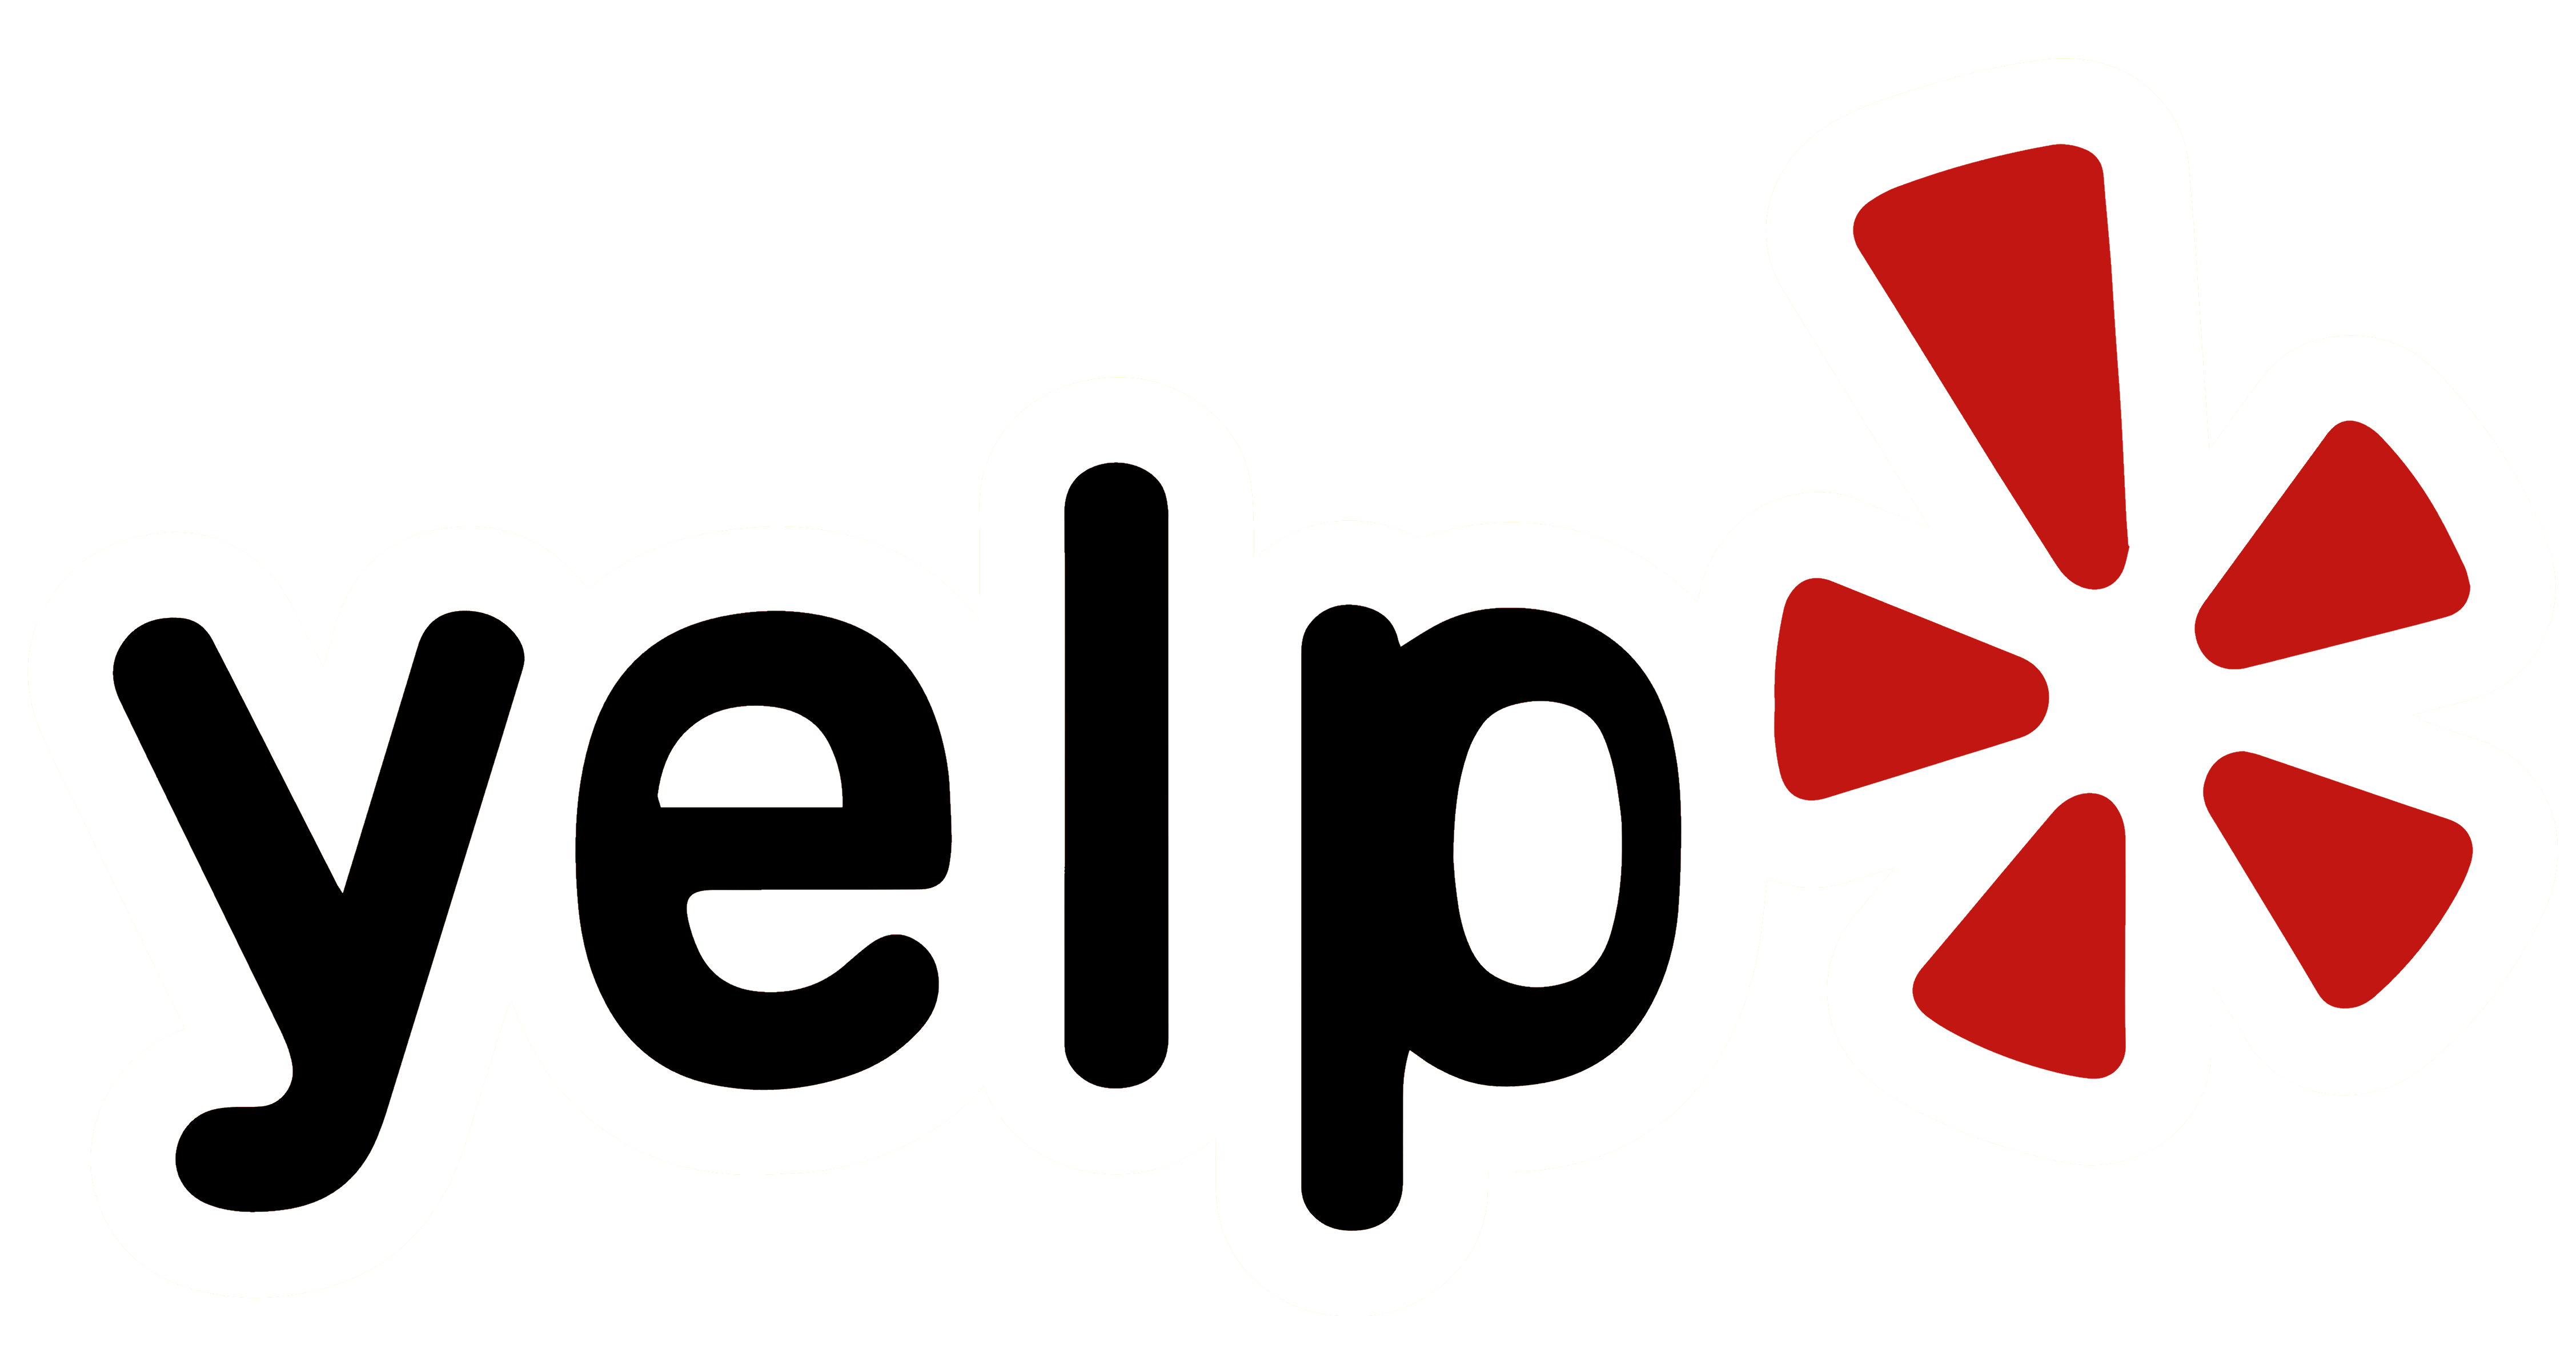 Yelp logo, logotype